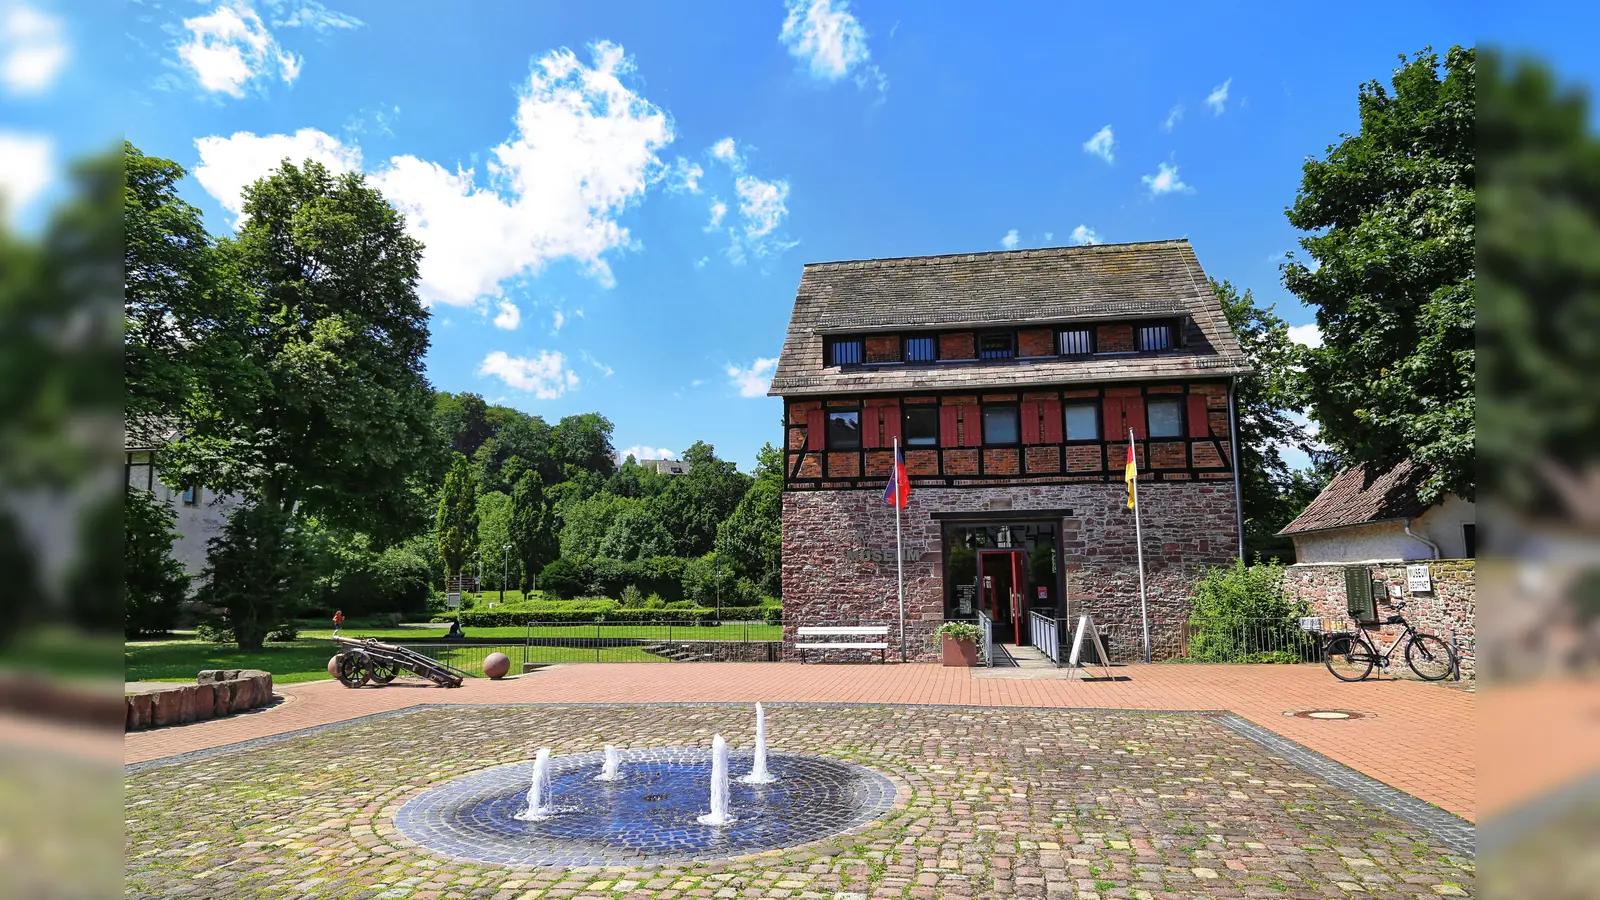 Die ehemalige Schulenburg und das heutige Münchhausen-Museum in Bodenwerder mit dem Brunnenplatz davor. (Foto: Samtgemeinde Bodenwerder-Polle/Agentur LeoDesign)